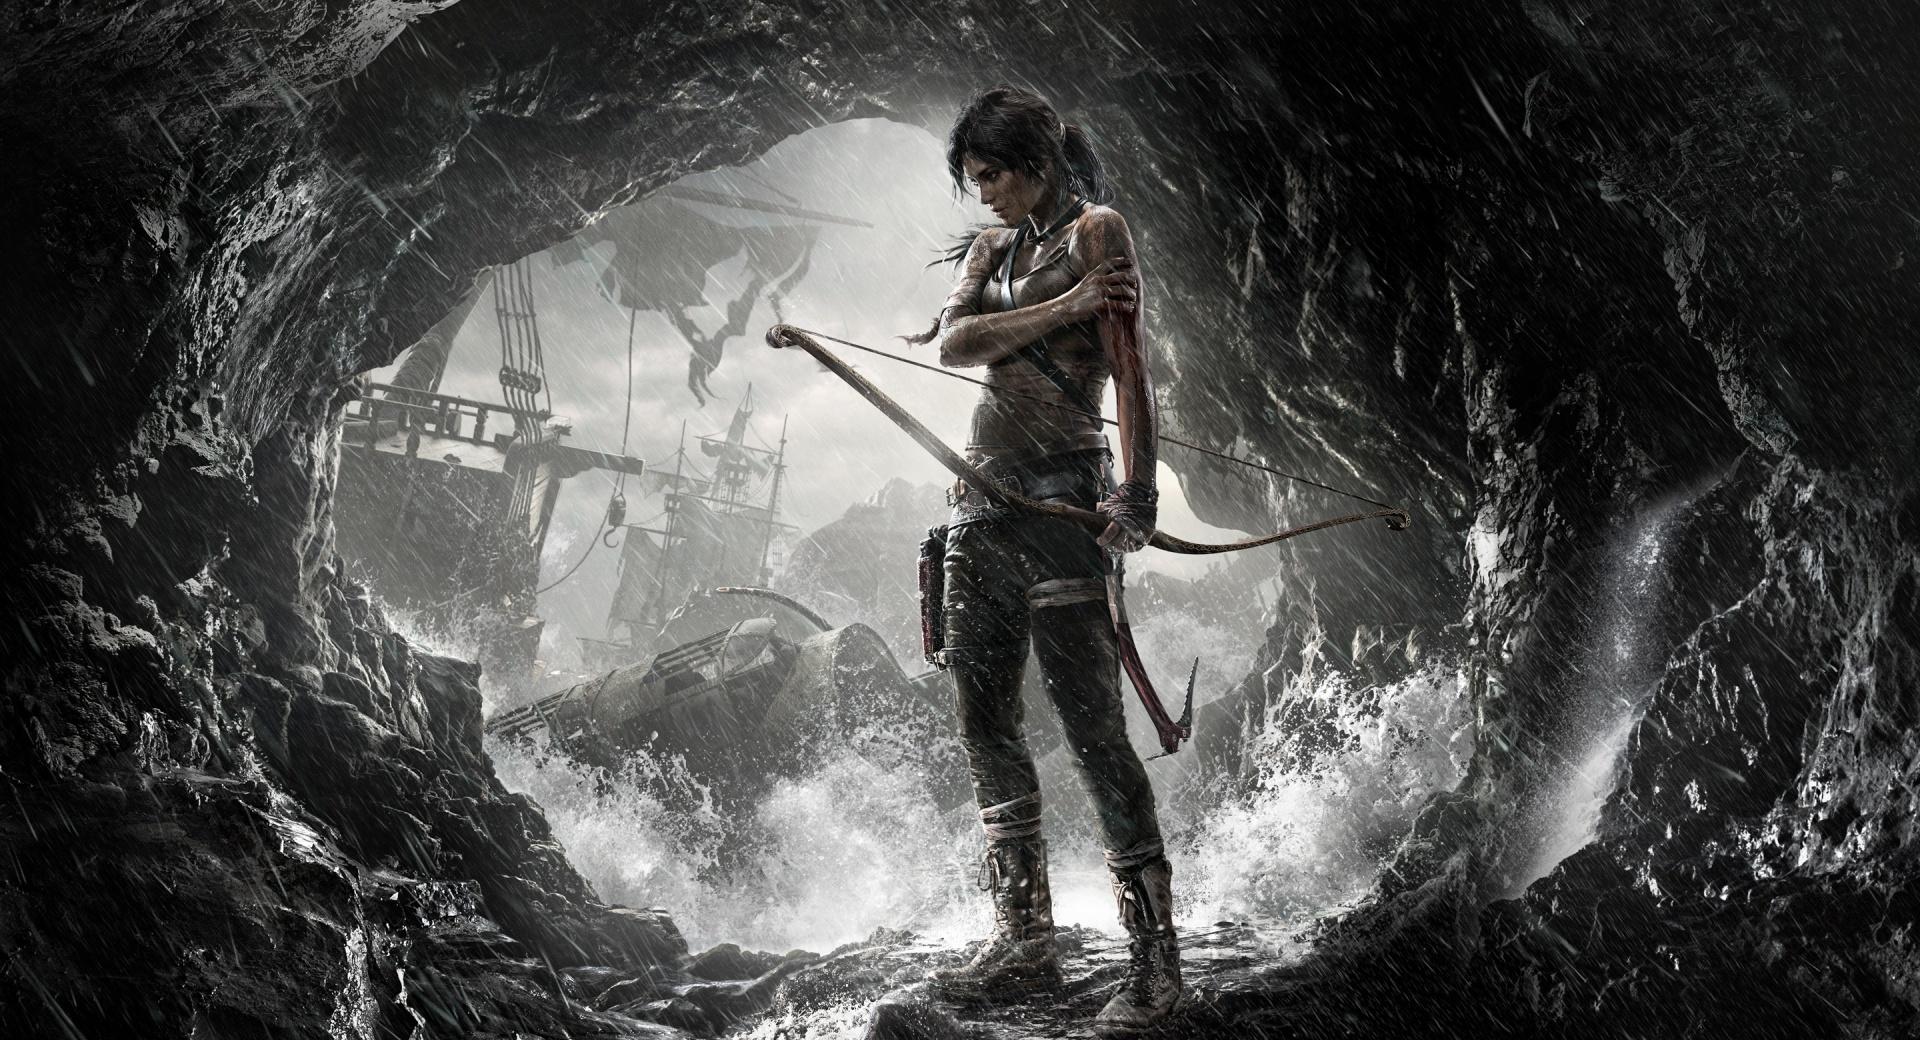 Tomb Raider Lara Croft 2013 at 1024 x 1024 iPad size wallpapers HD quality